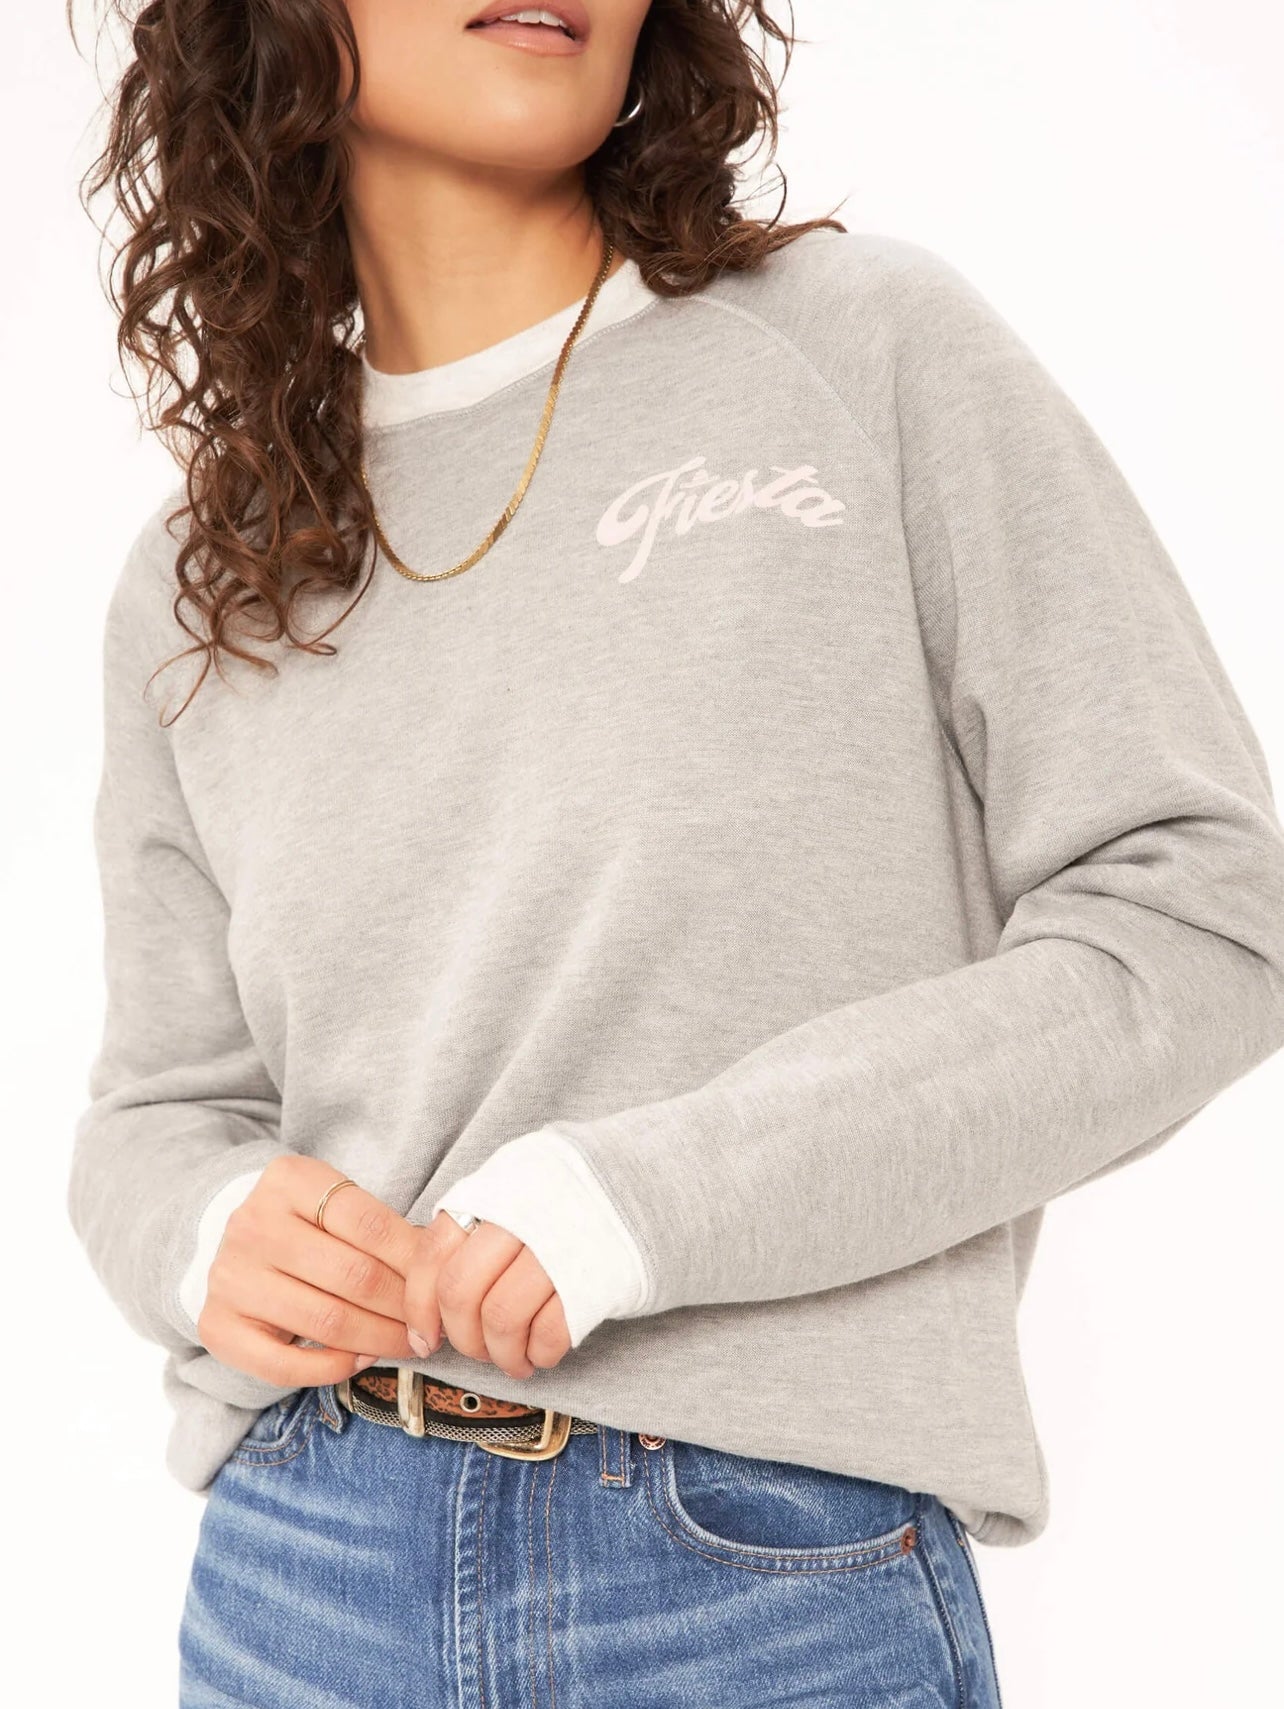 Grey Fiesta/Siesta reversible sweatshirt